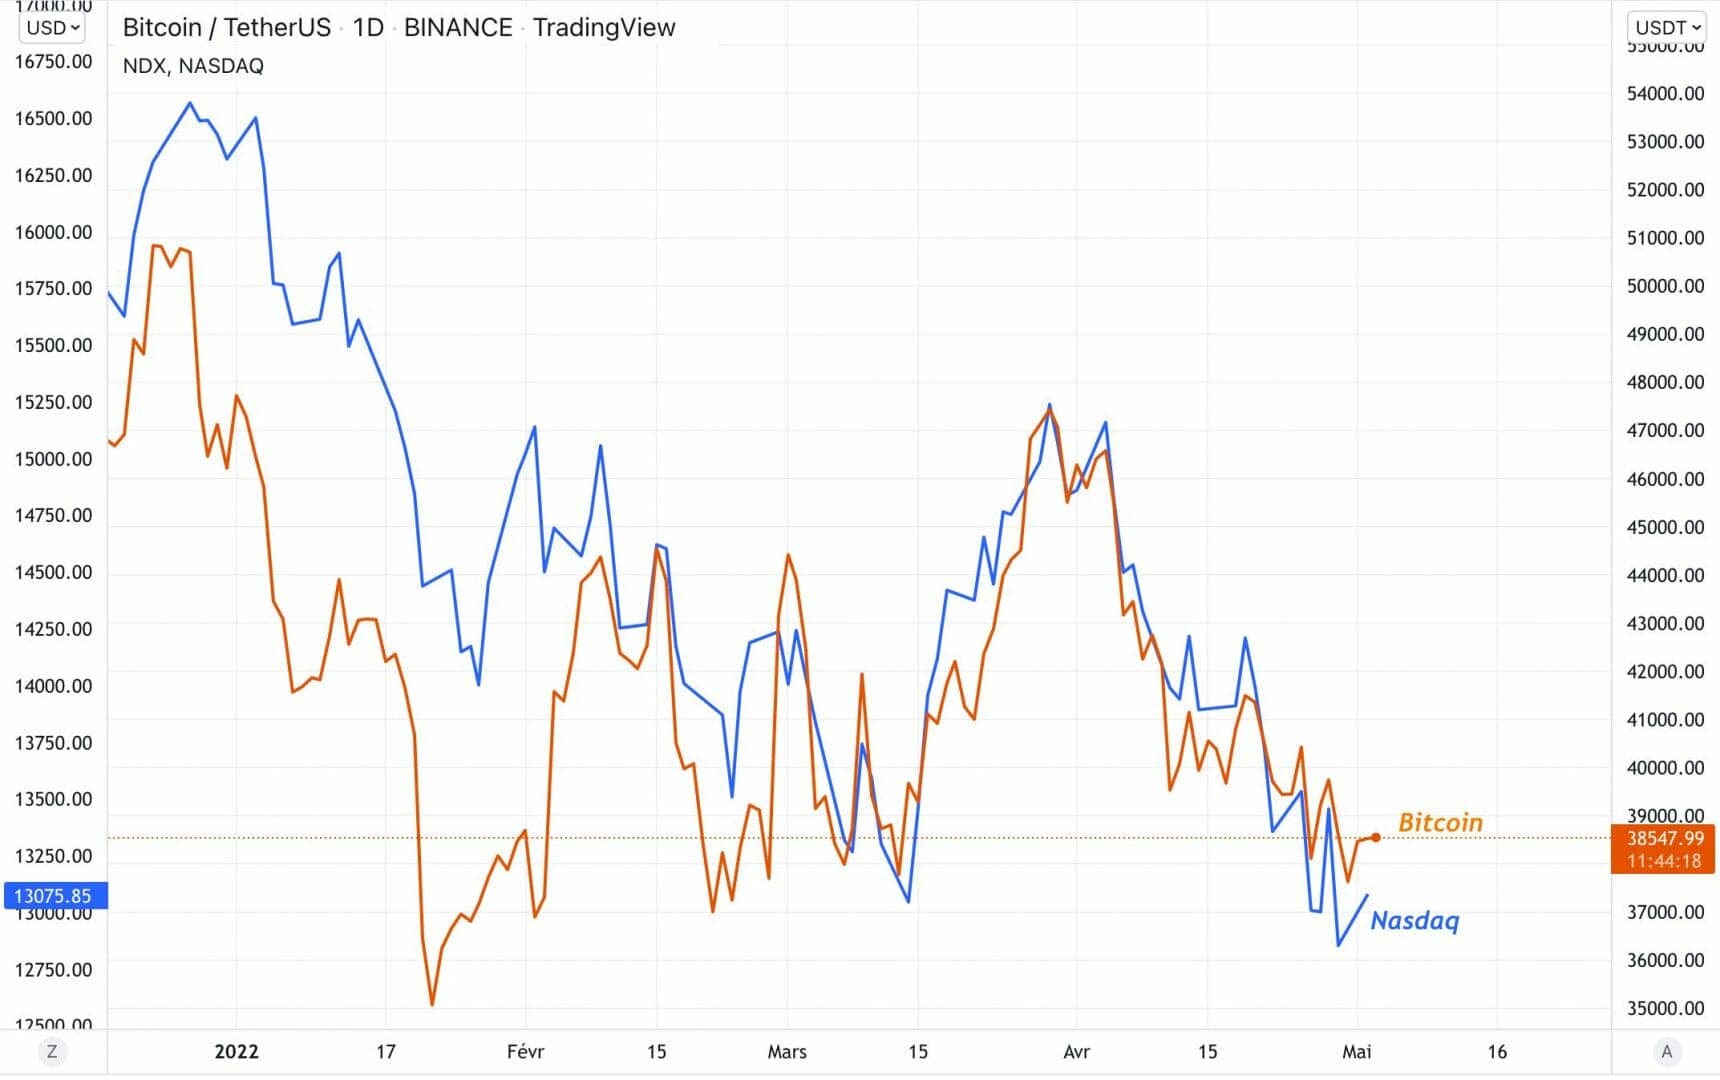 La corrélation entre le Bitcoin et le NASDAQ est très forte.